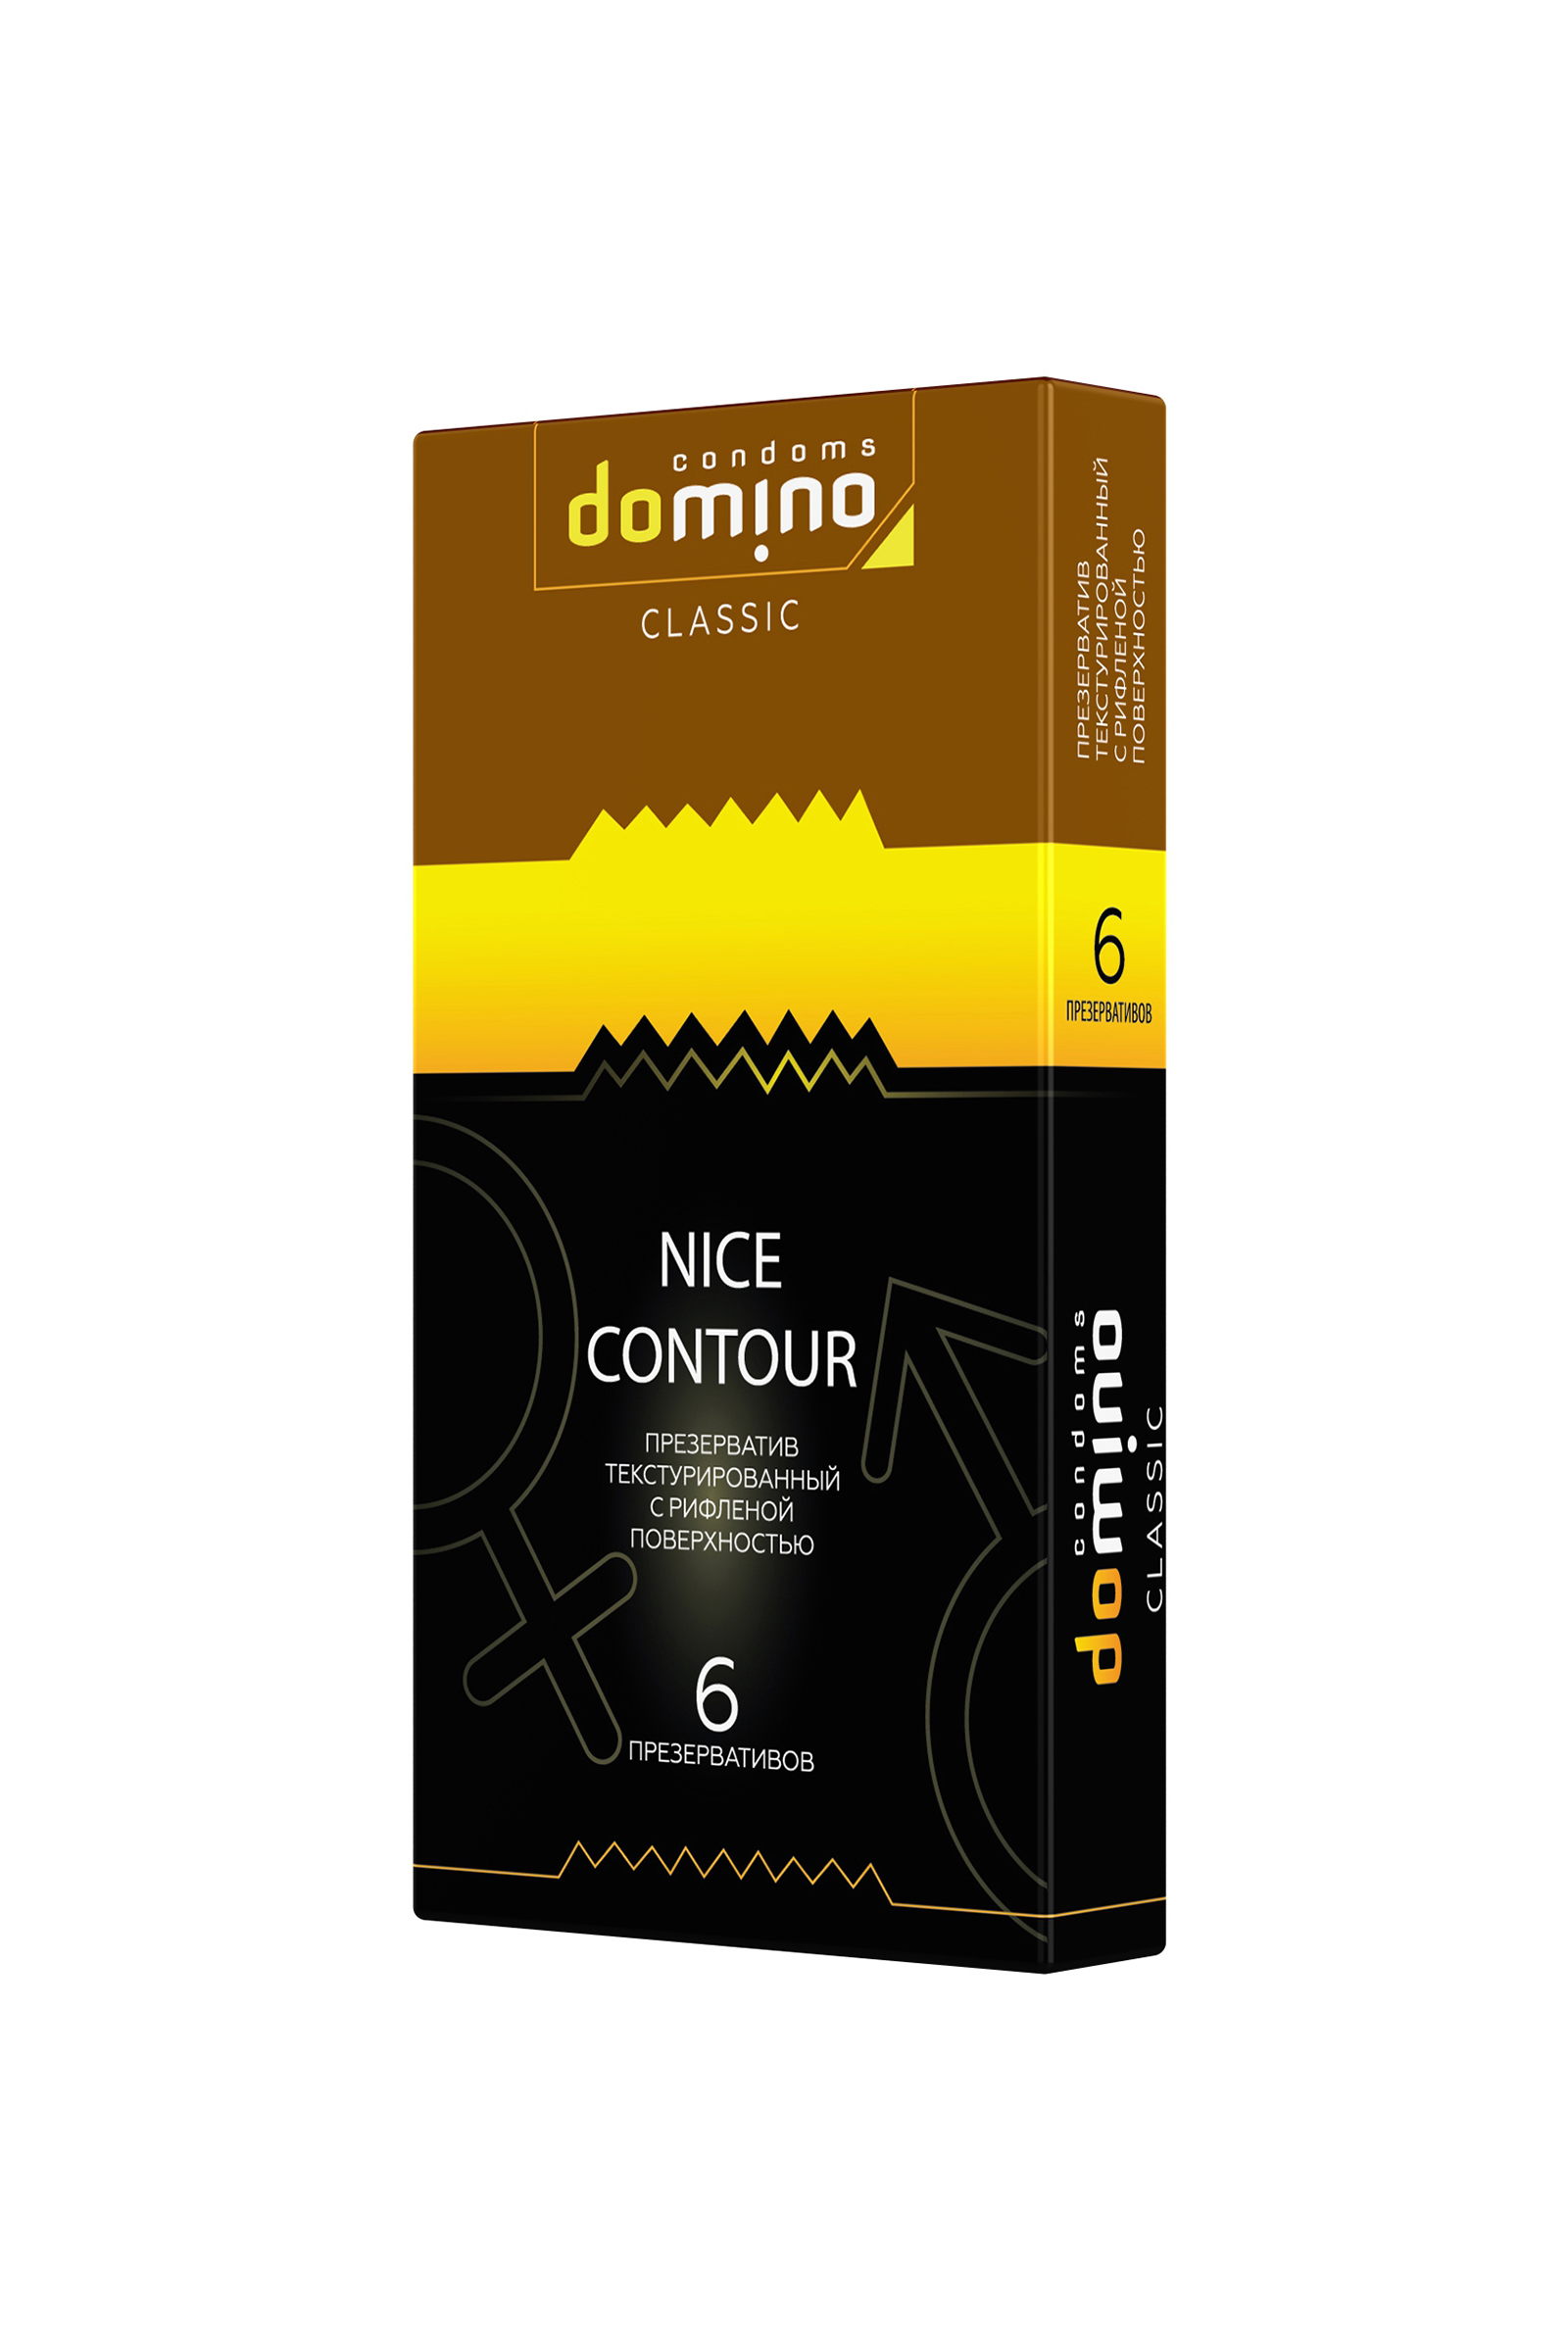 Презервативы Domino Classic Nice contour 18 см 6 шт